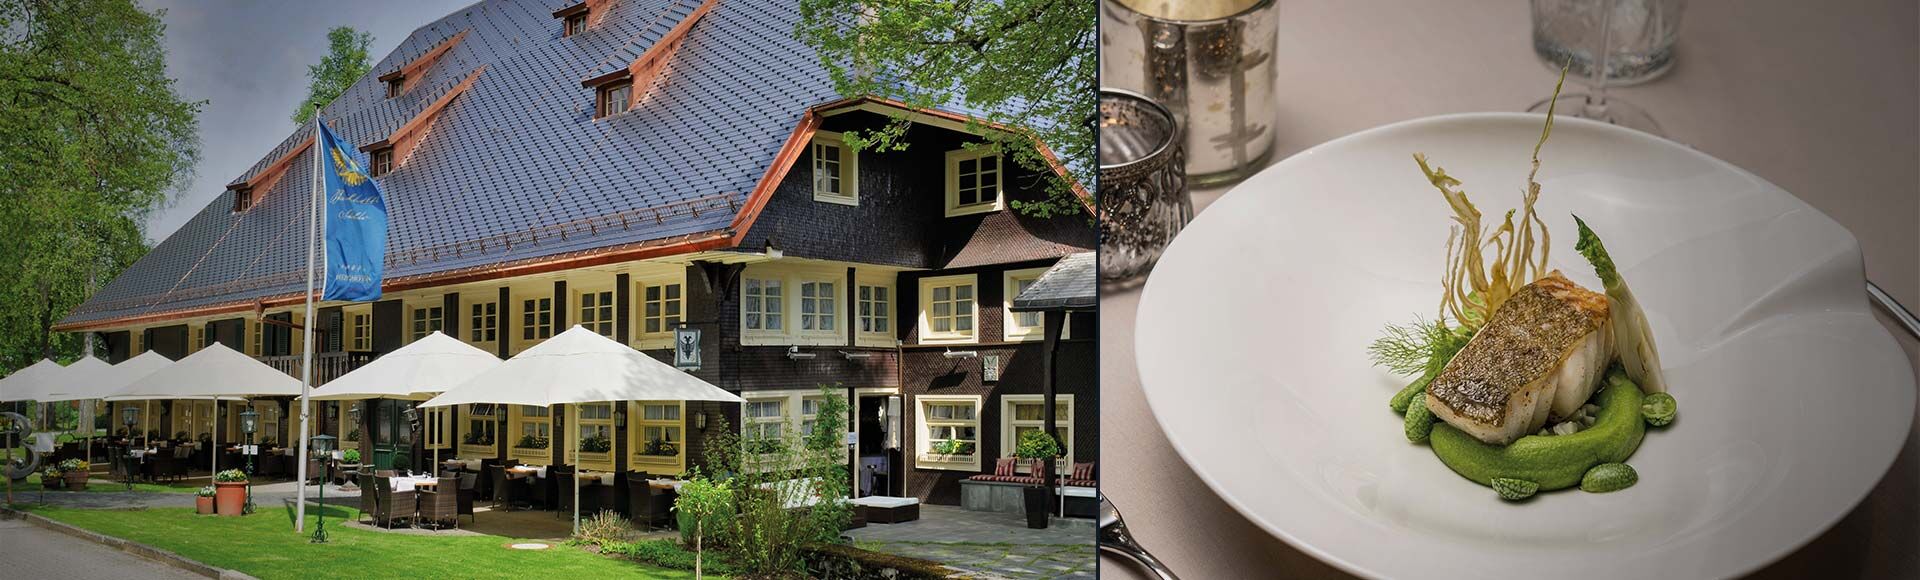 Schwarzwaldhaus mit Terrasse und Gericht Kabeljau auf Spinatmousseline und Fencheltartar